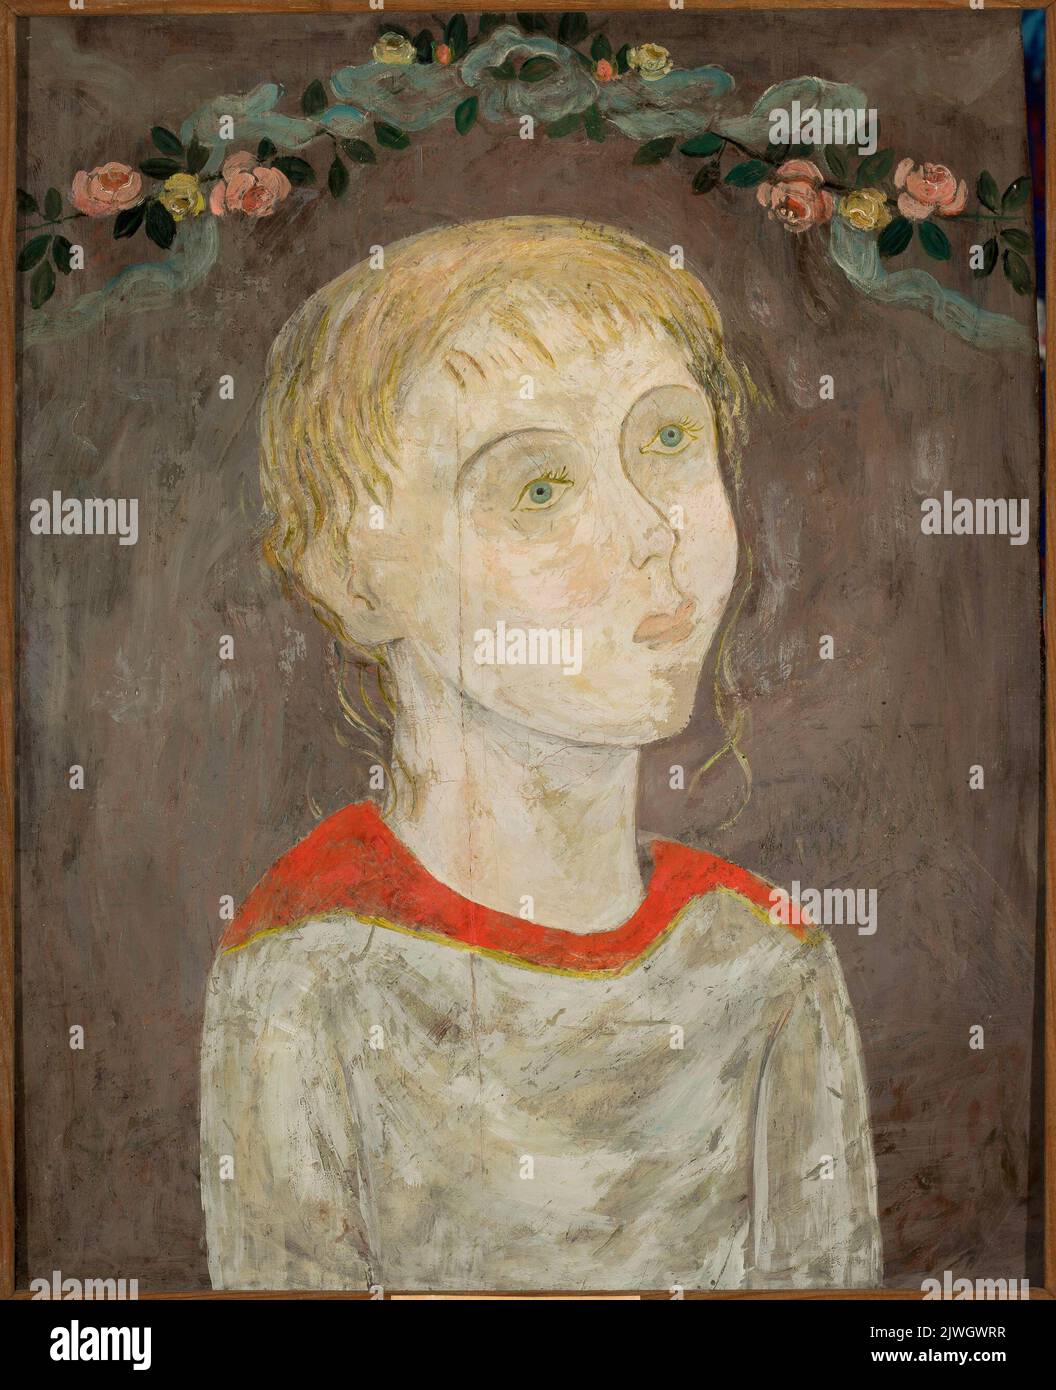 Dziewczyna z girlandą kwiatów. Makowski, Tadeusz (1882-1932), pittore Foto Stock